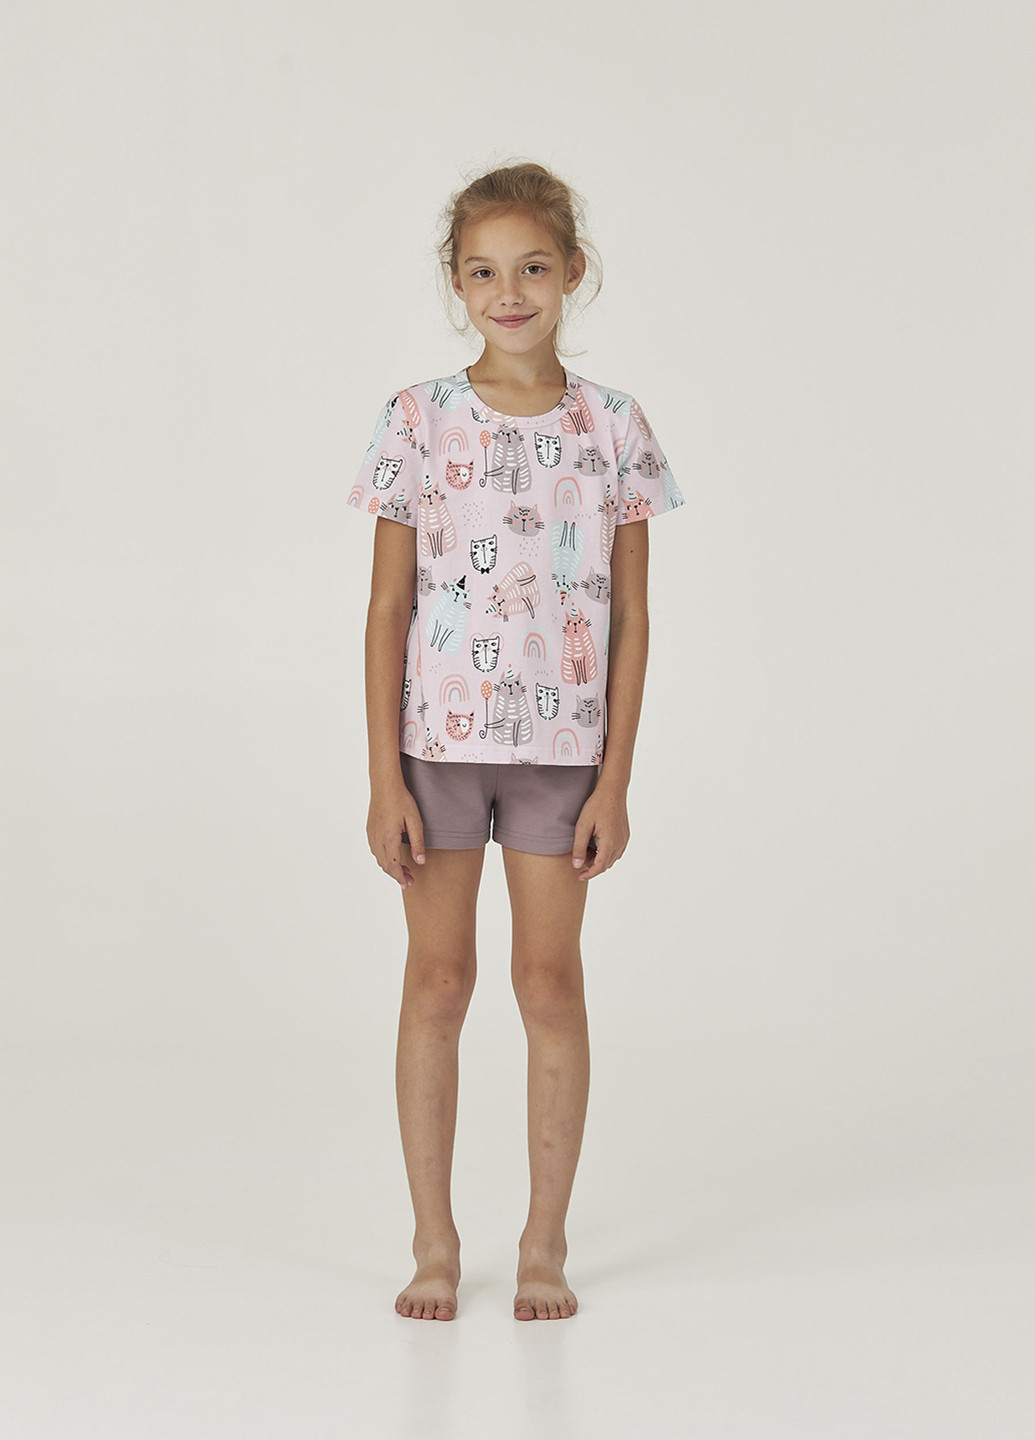 Комбинированная всесезон пижама (футболка, шорты) футболка + шорты Gofre